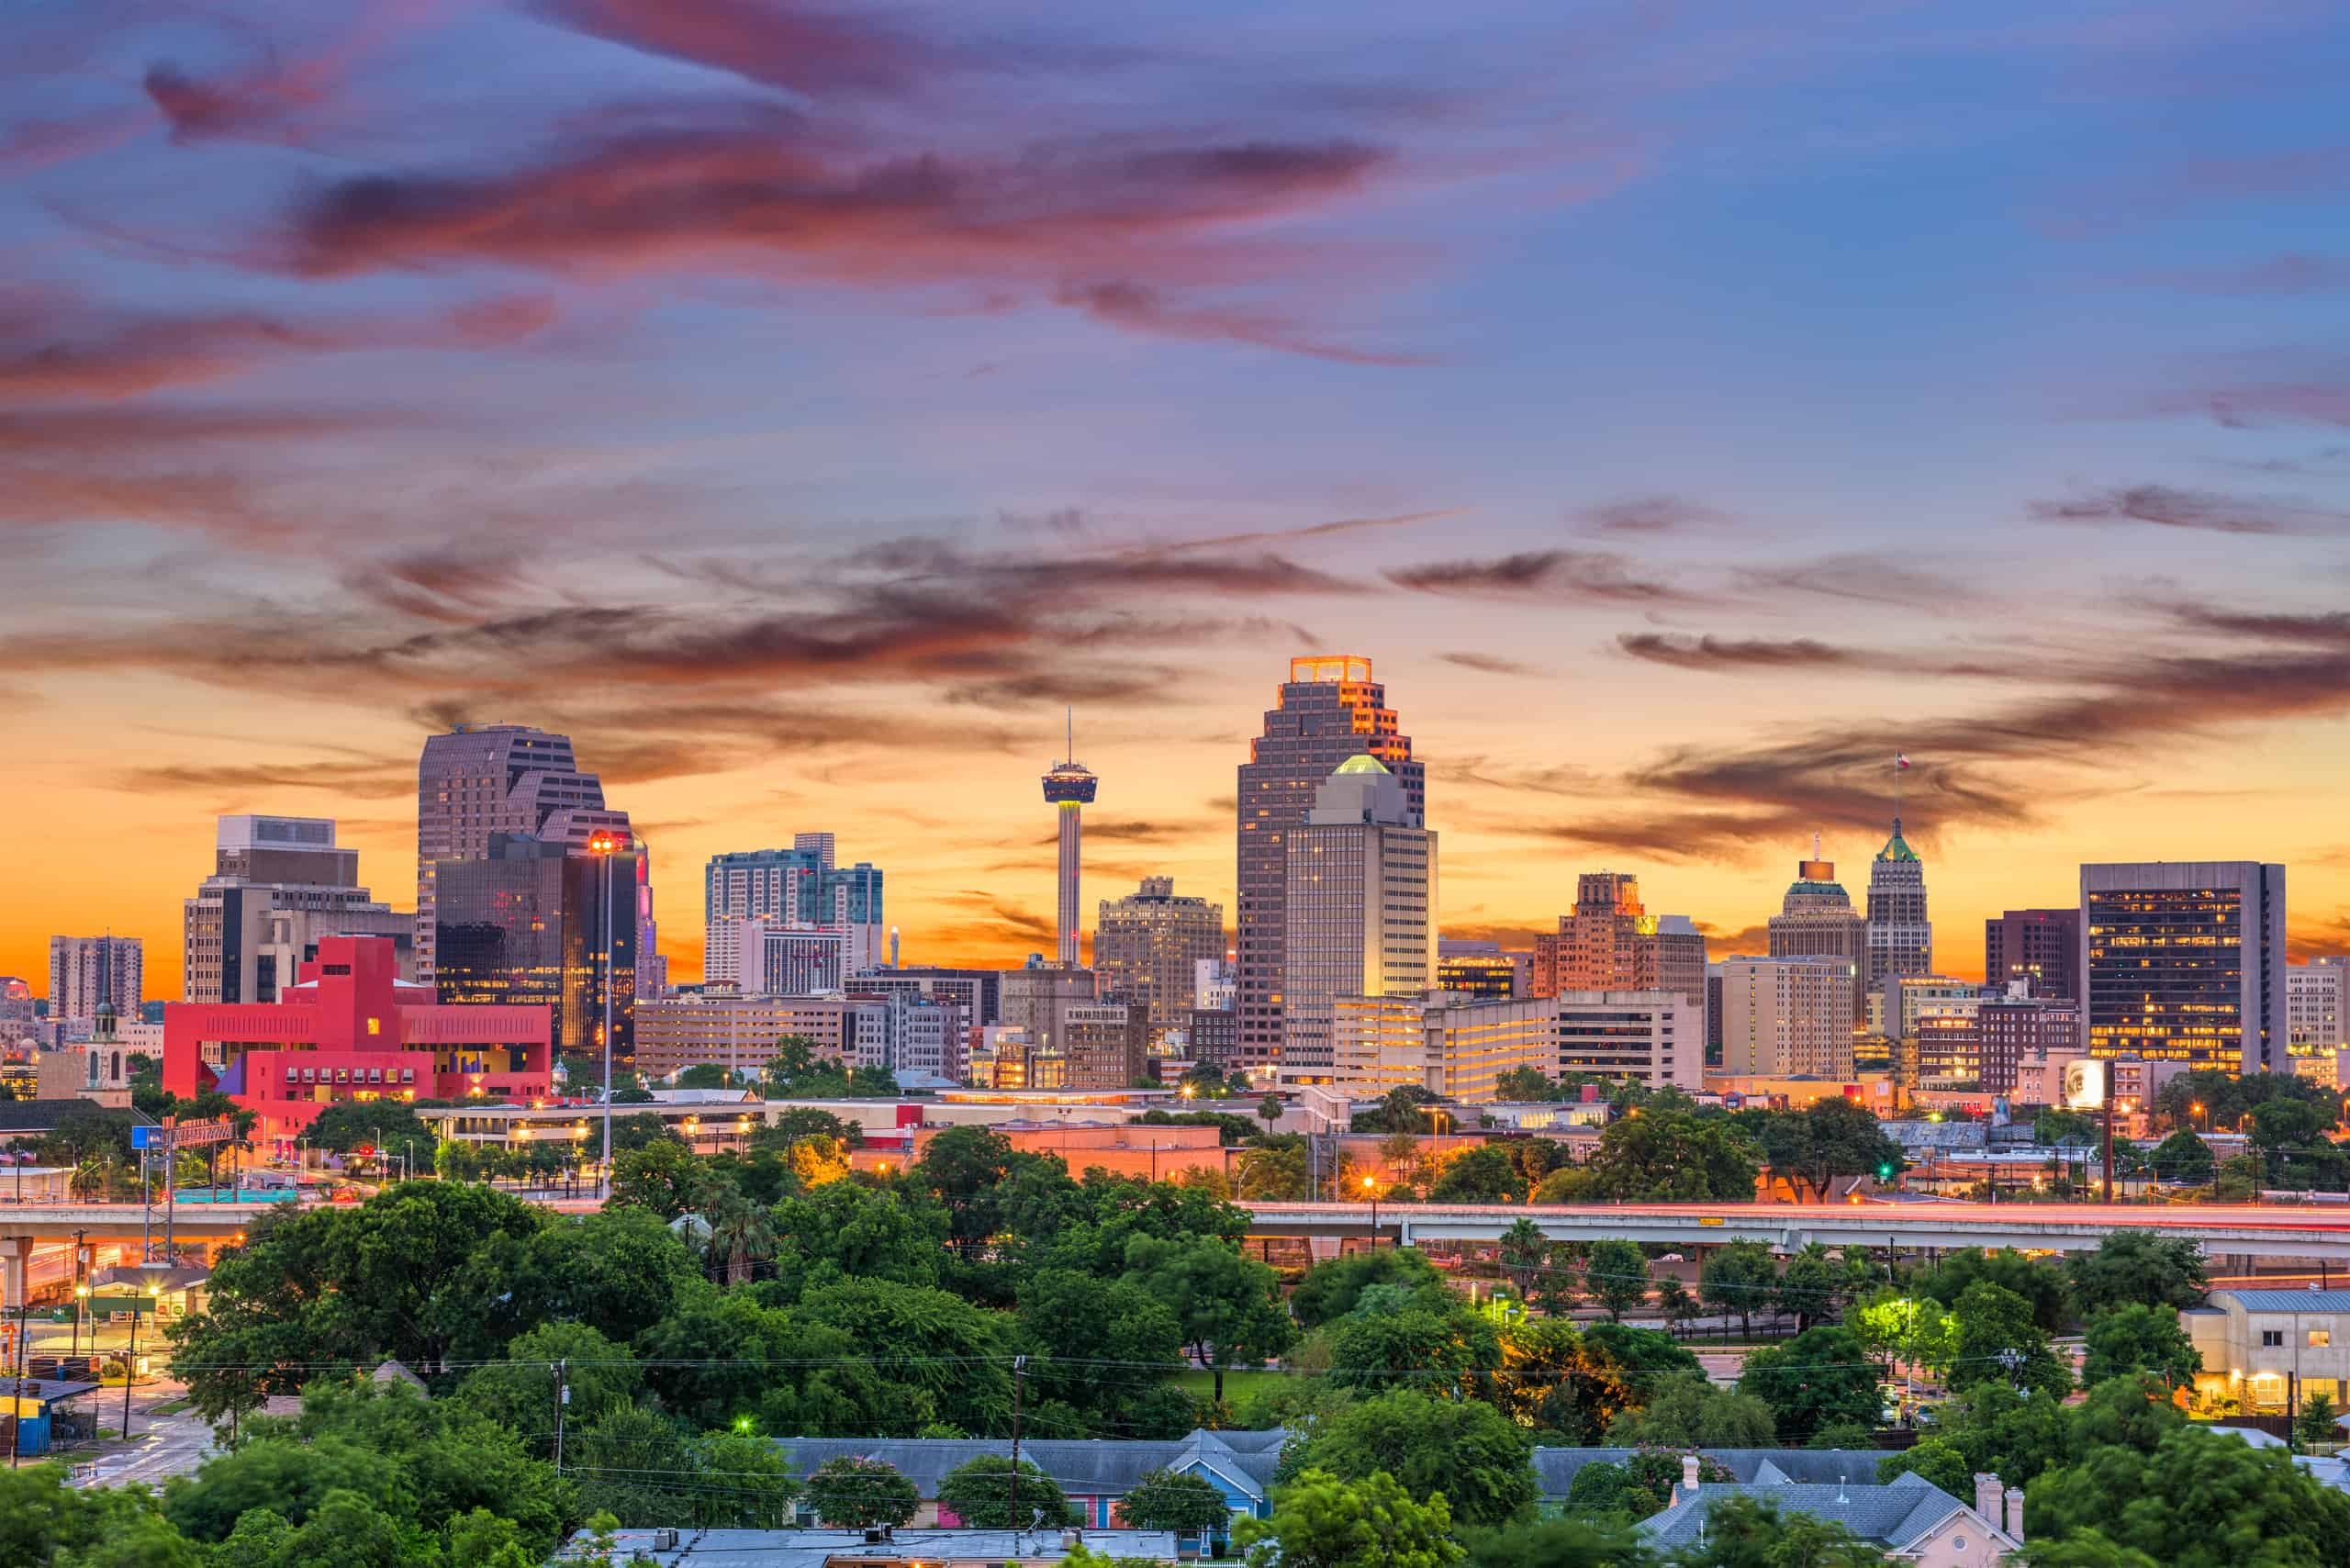 Immagine dello skyline di San Antonio, Texas.